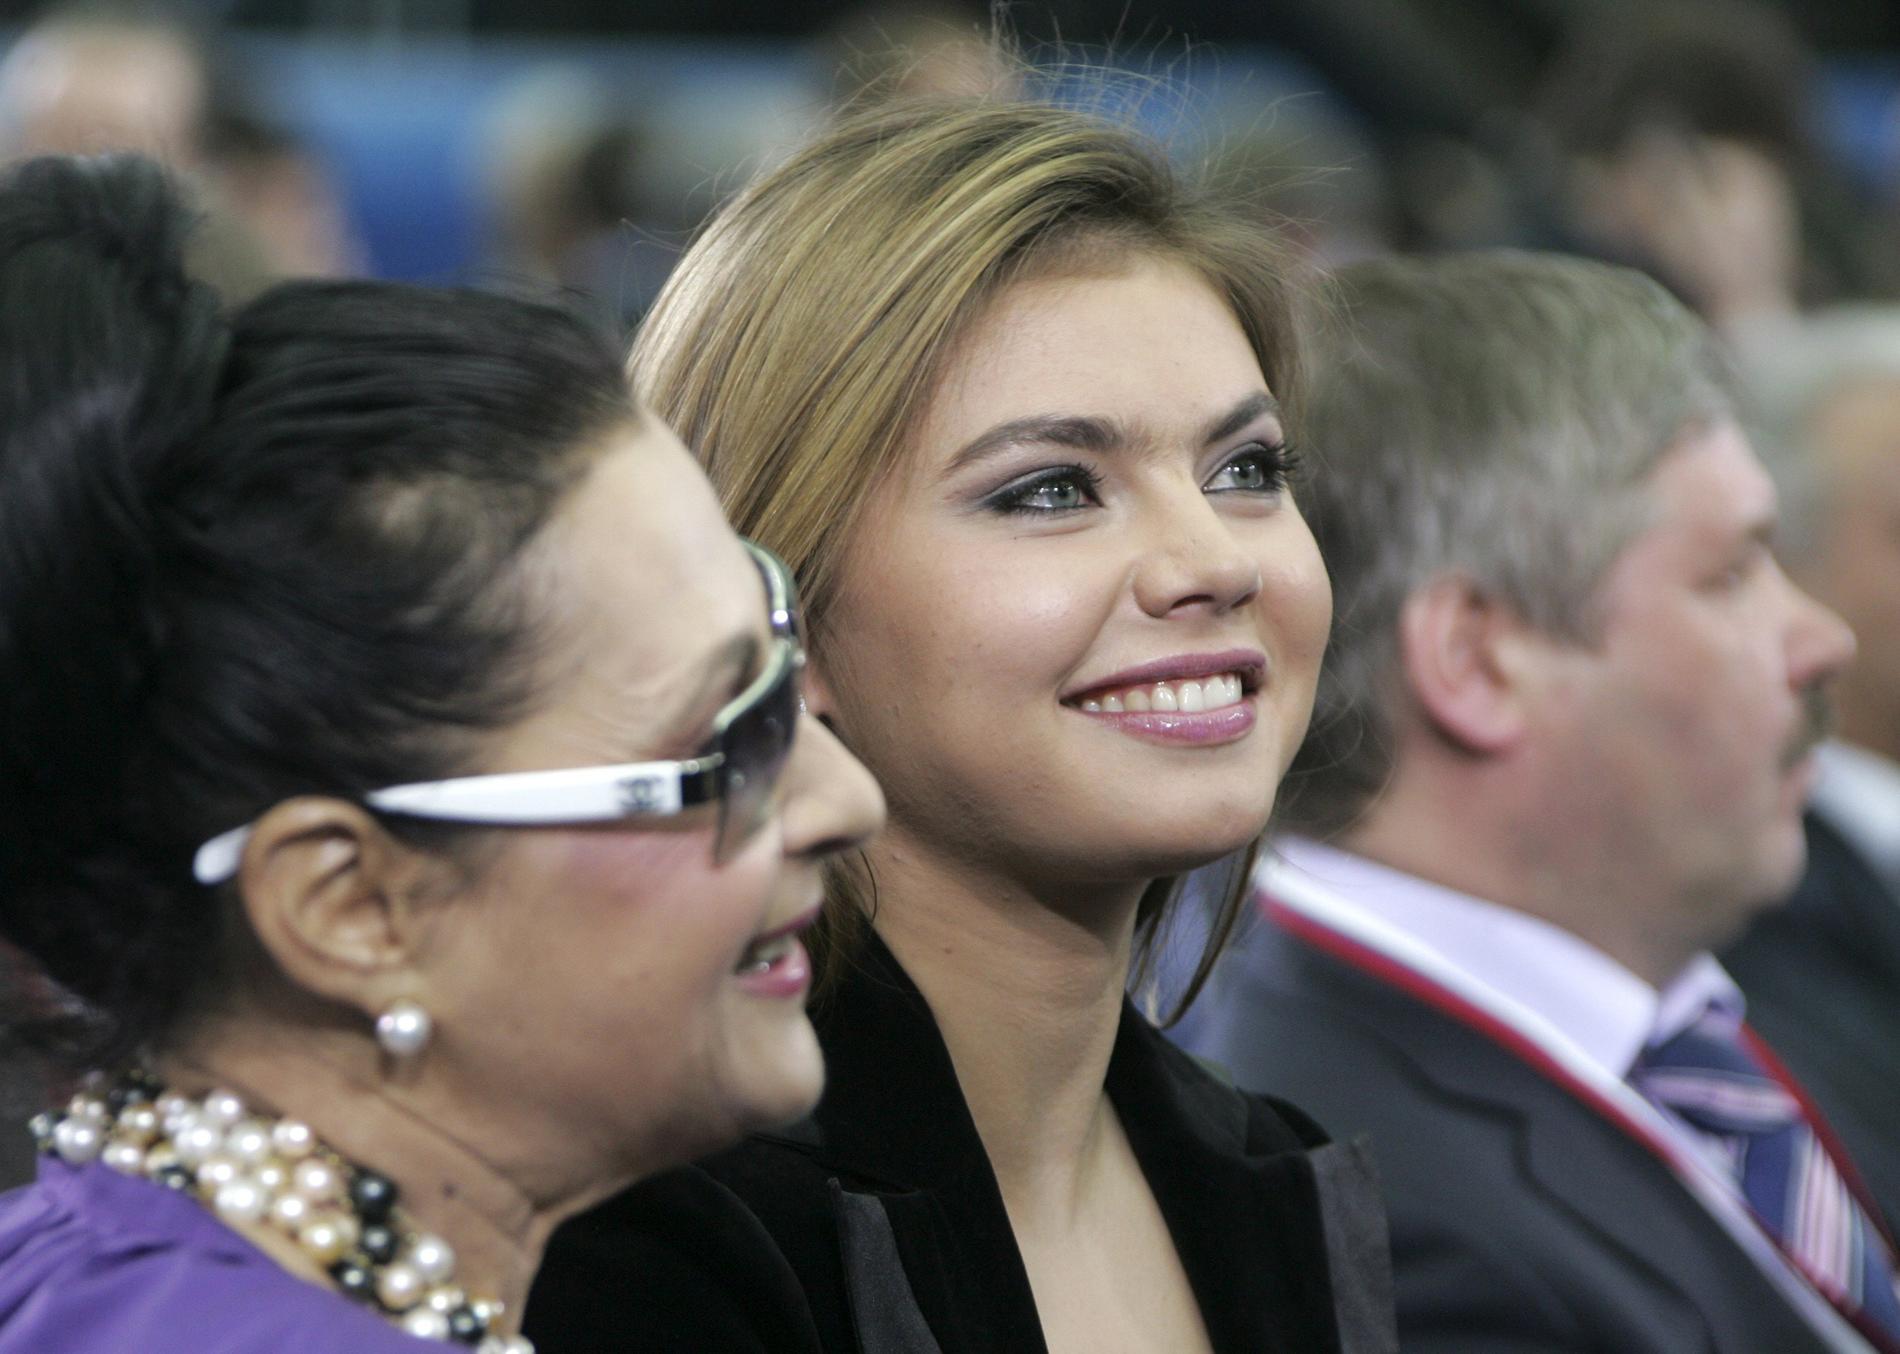 Före detta gymnasten Alina Kabayeva har pekats ut som Putins nya flickvän. Enligt envisa rykten ska de ha fått ett barn och det sägs vara orsaken till Putins frånvaro. Men ryktena slås tillbaka av ryska myndigheter.